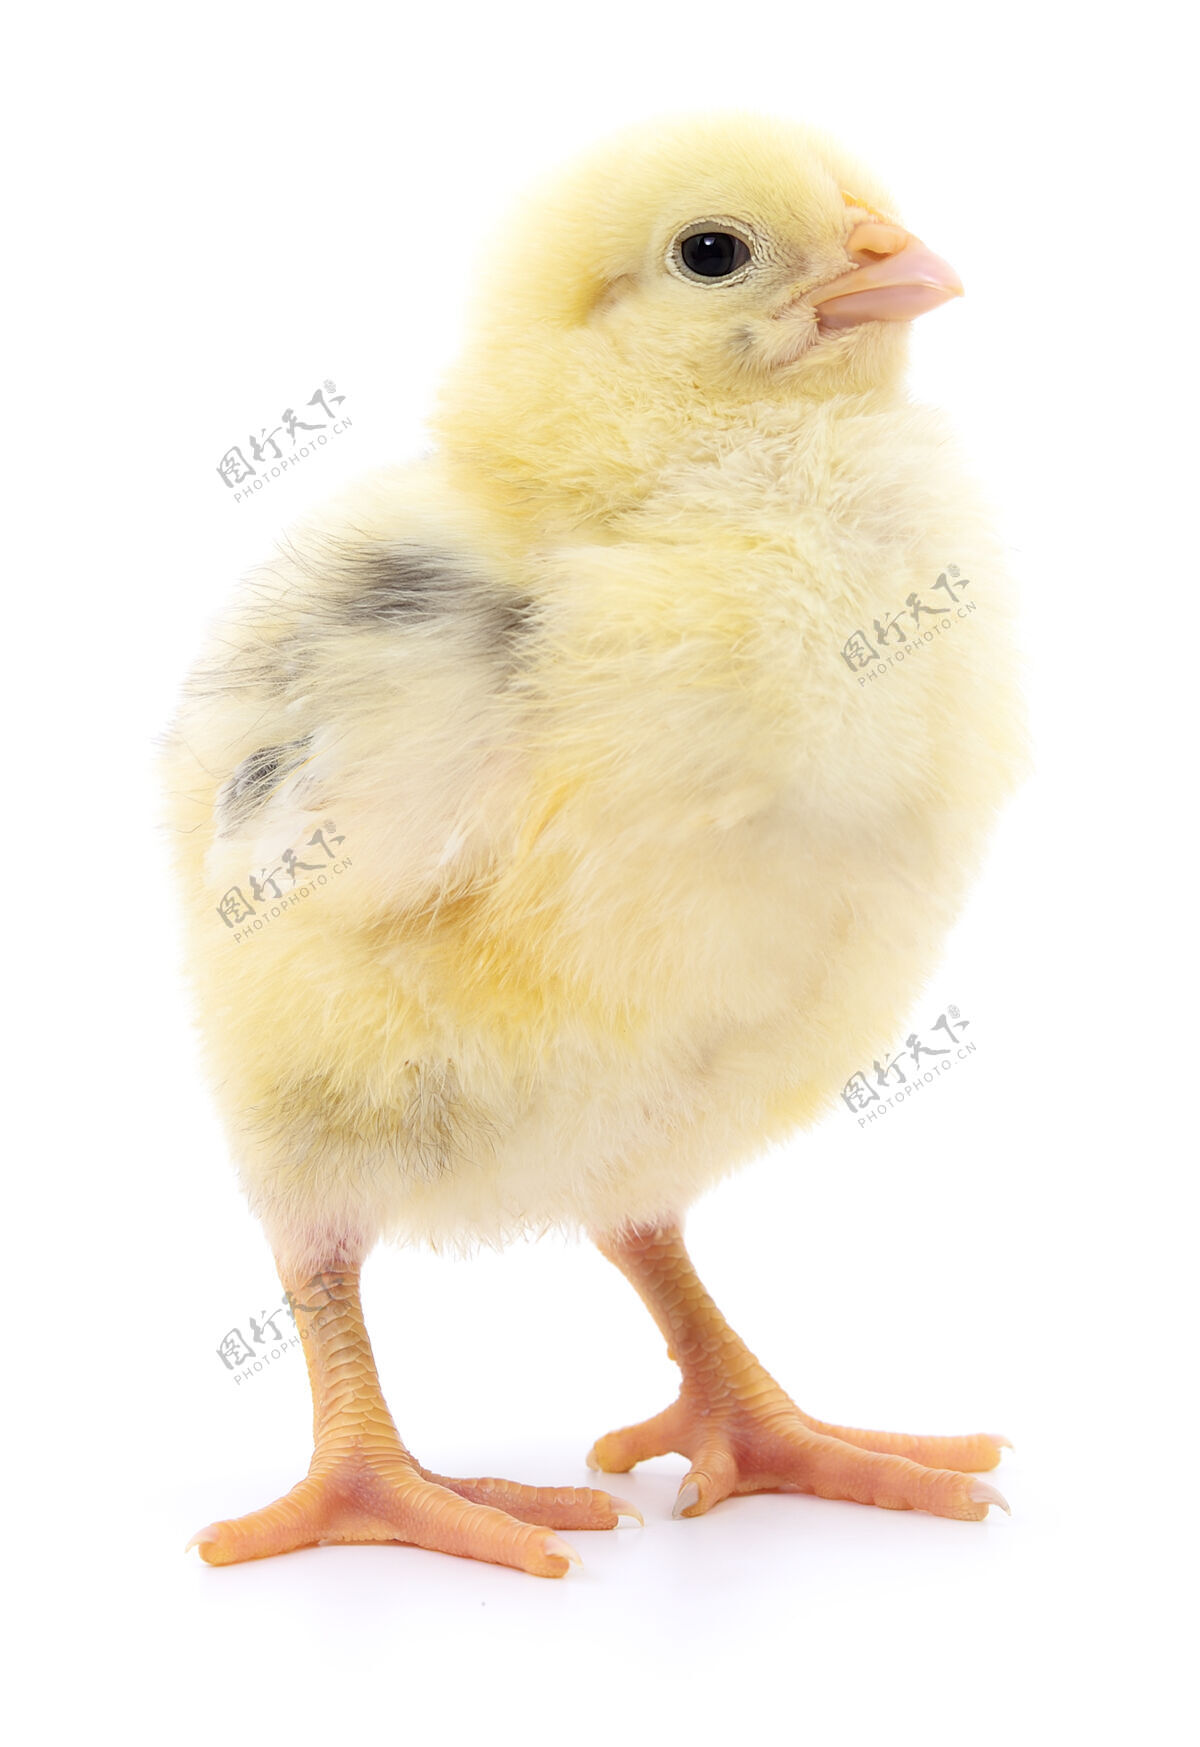 射击一只小鸡放在一只白鸡蛋上鸡小动物